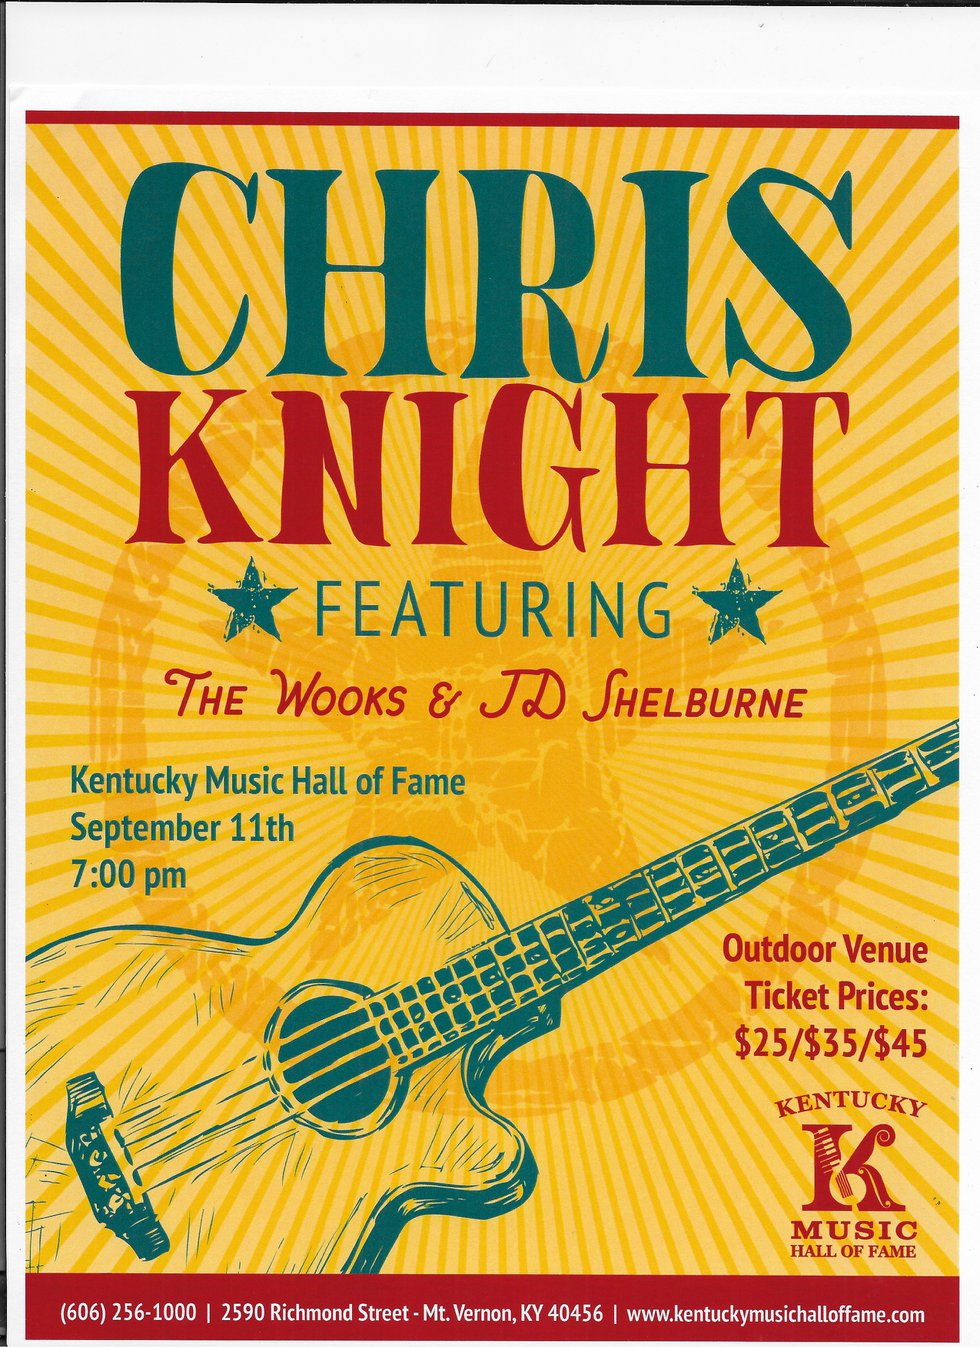 chris knight concert.jpeg